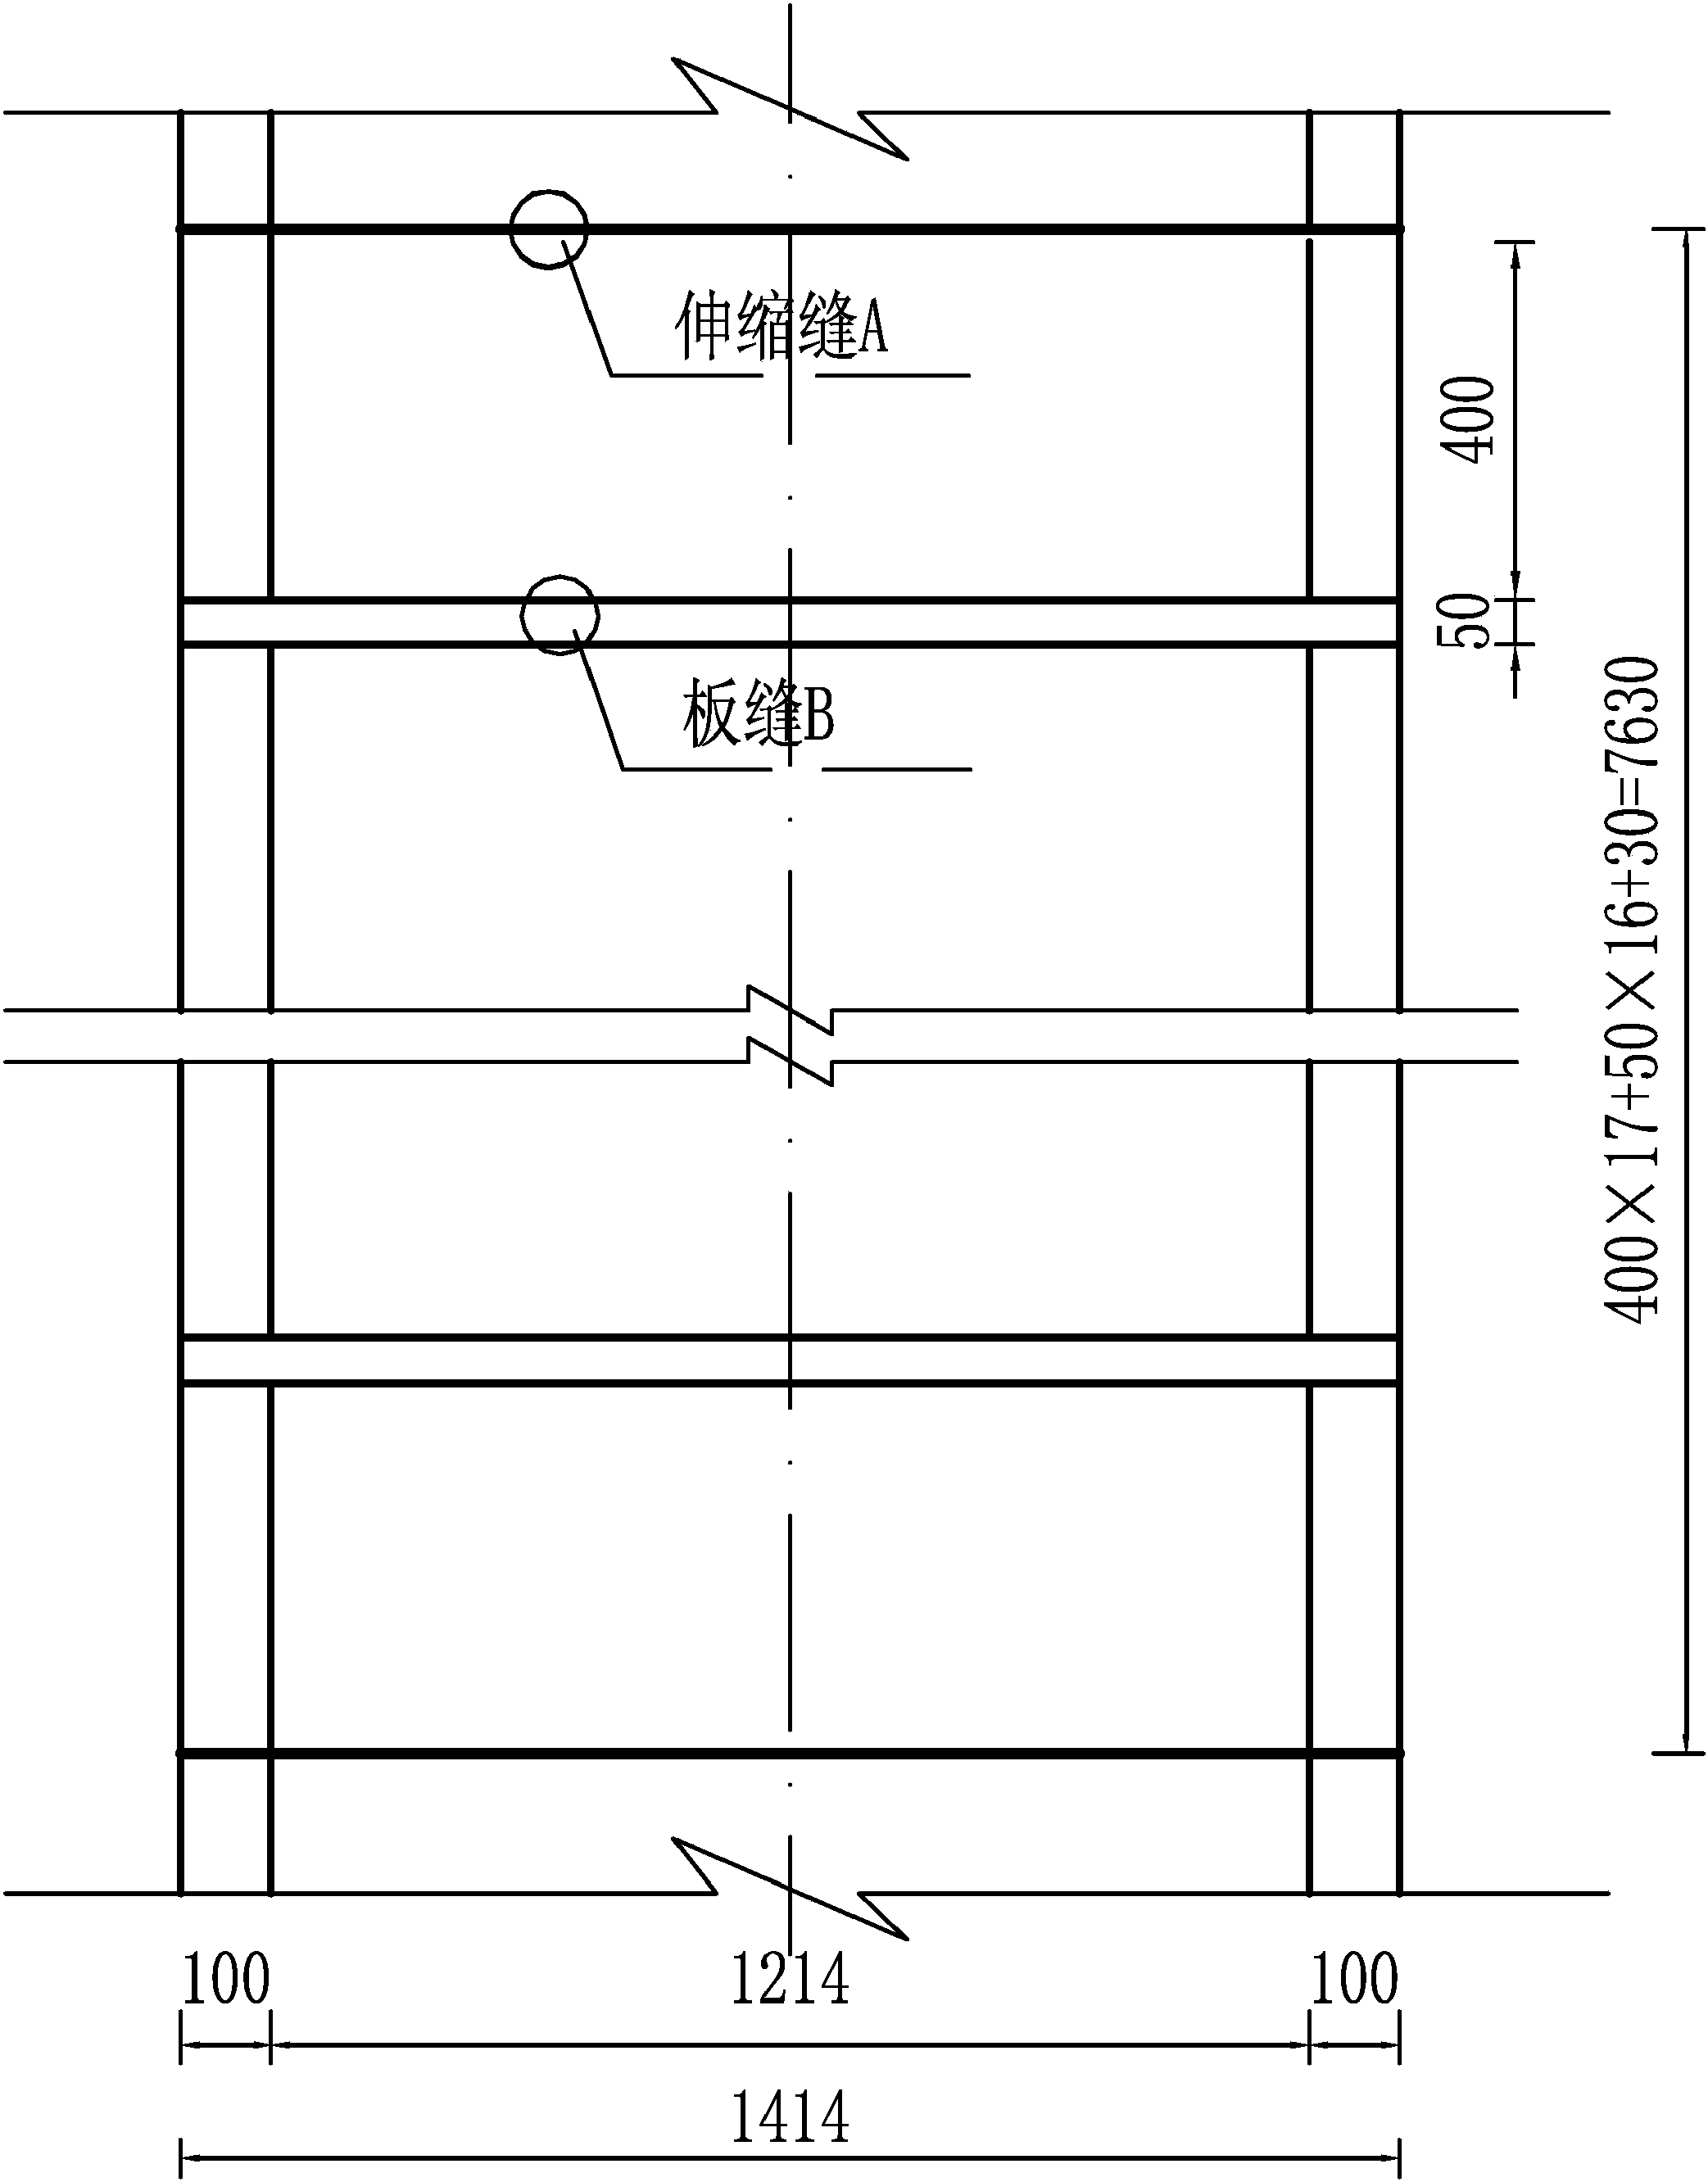 弧形渠道(D=0.4m)砌护图